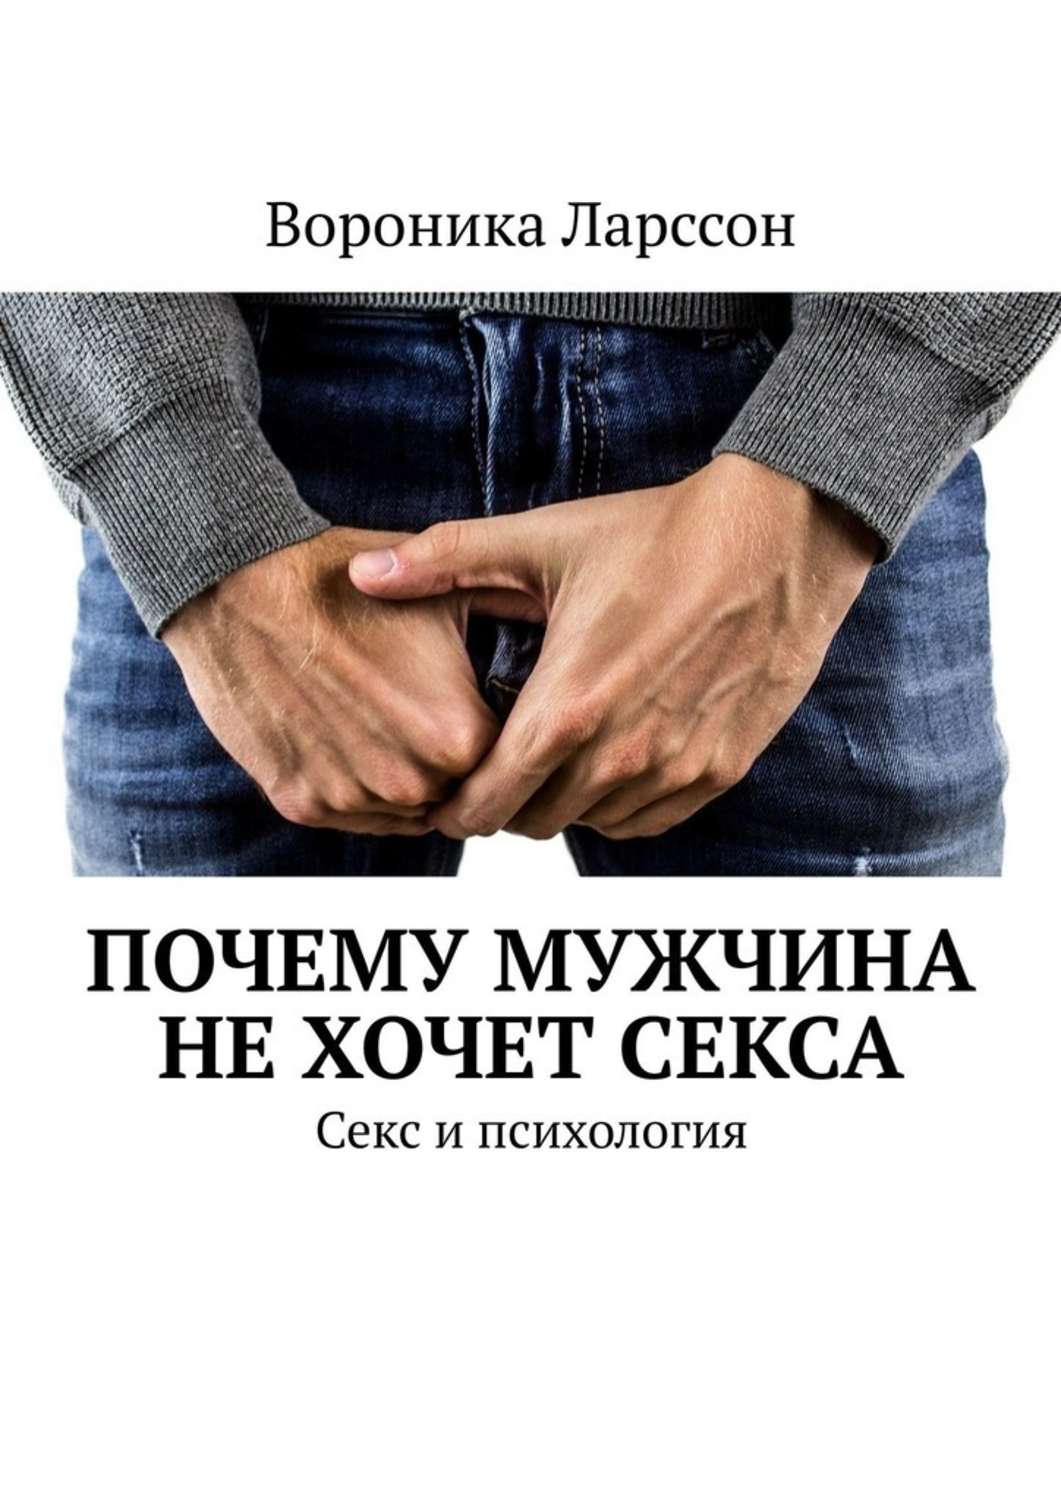 Возрастные нормы мужской сексуальности | Москва